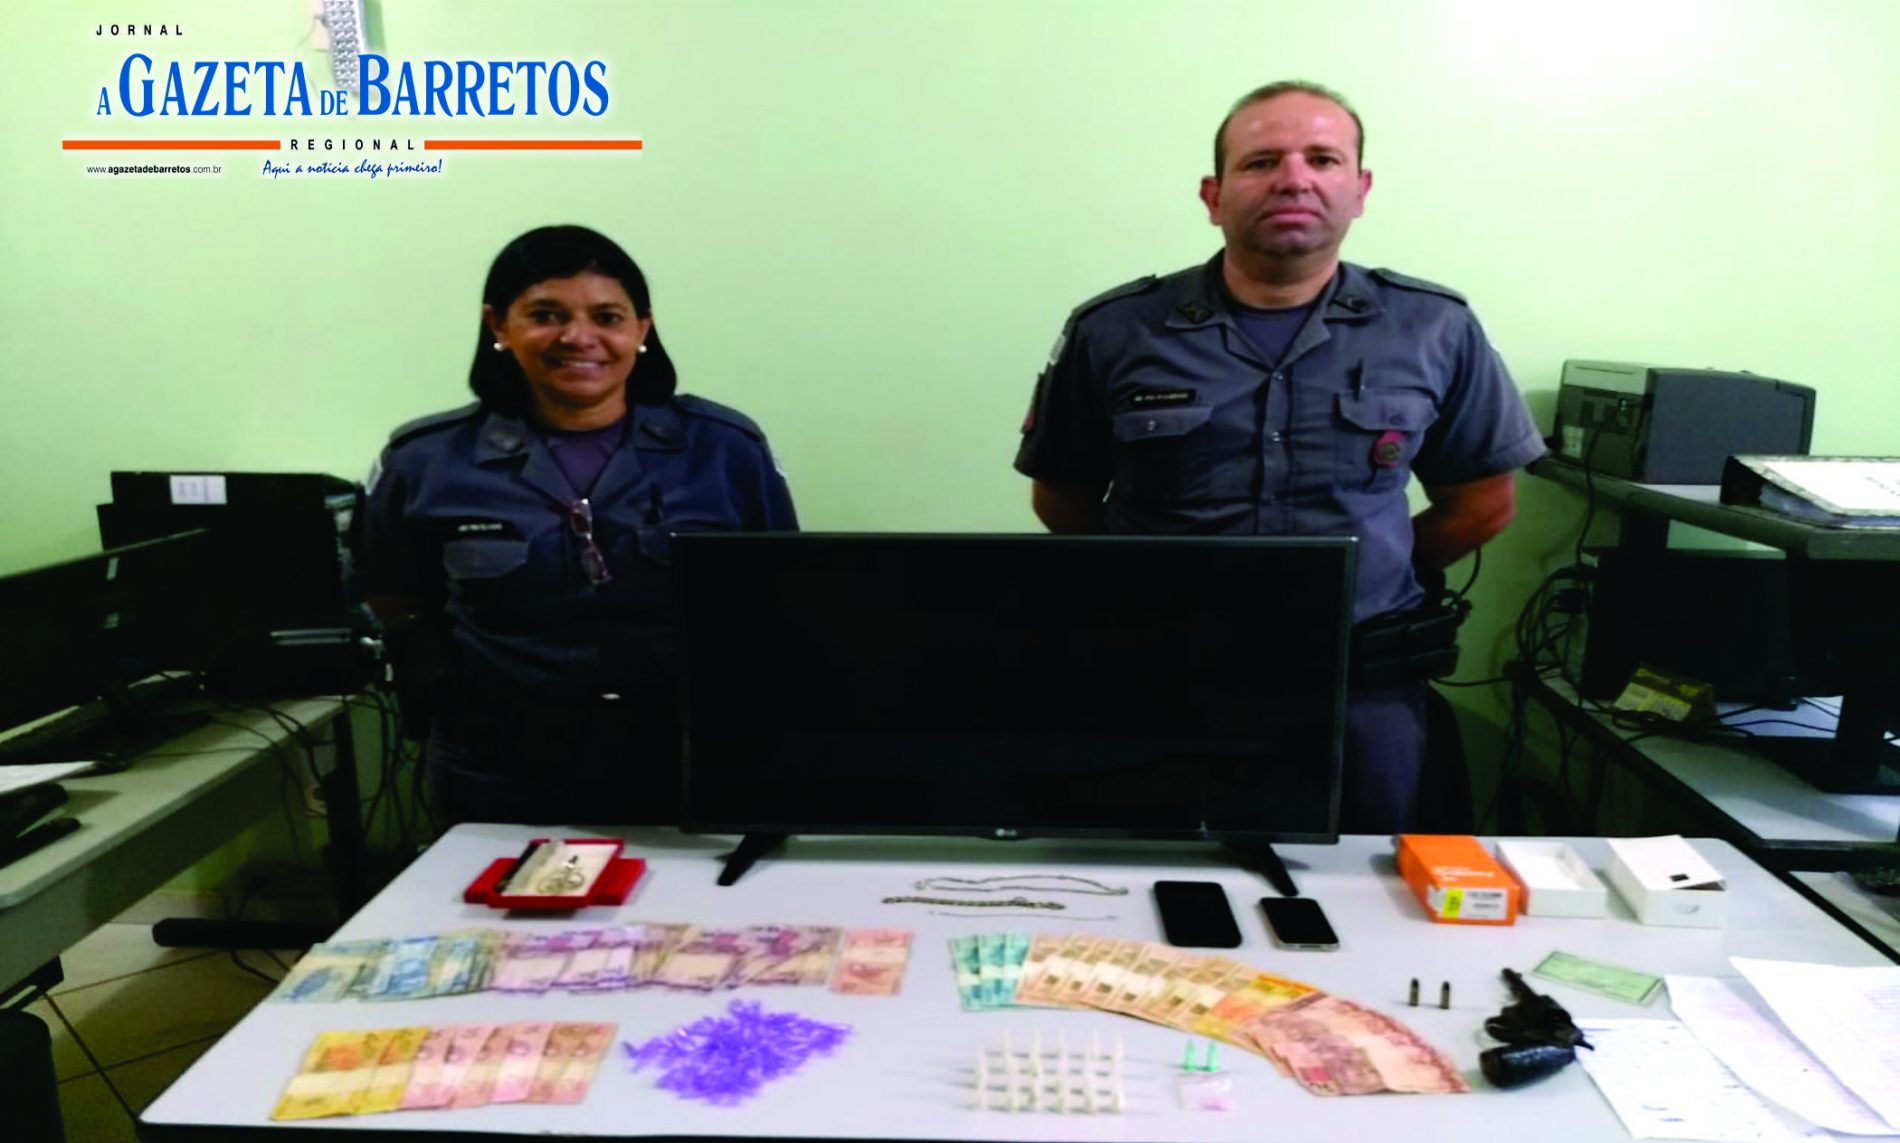 BARRETOS: Policia apreende menor com revólver, dinheiro, televisão, celulares, drogas e diversos outros objetos